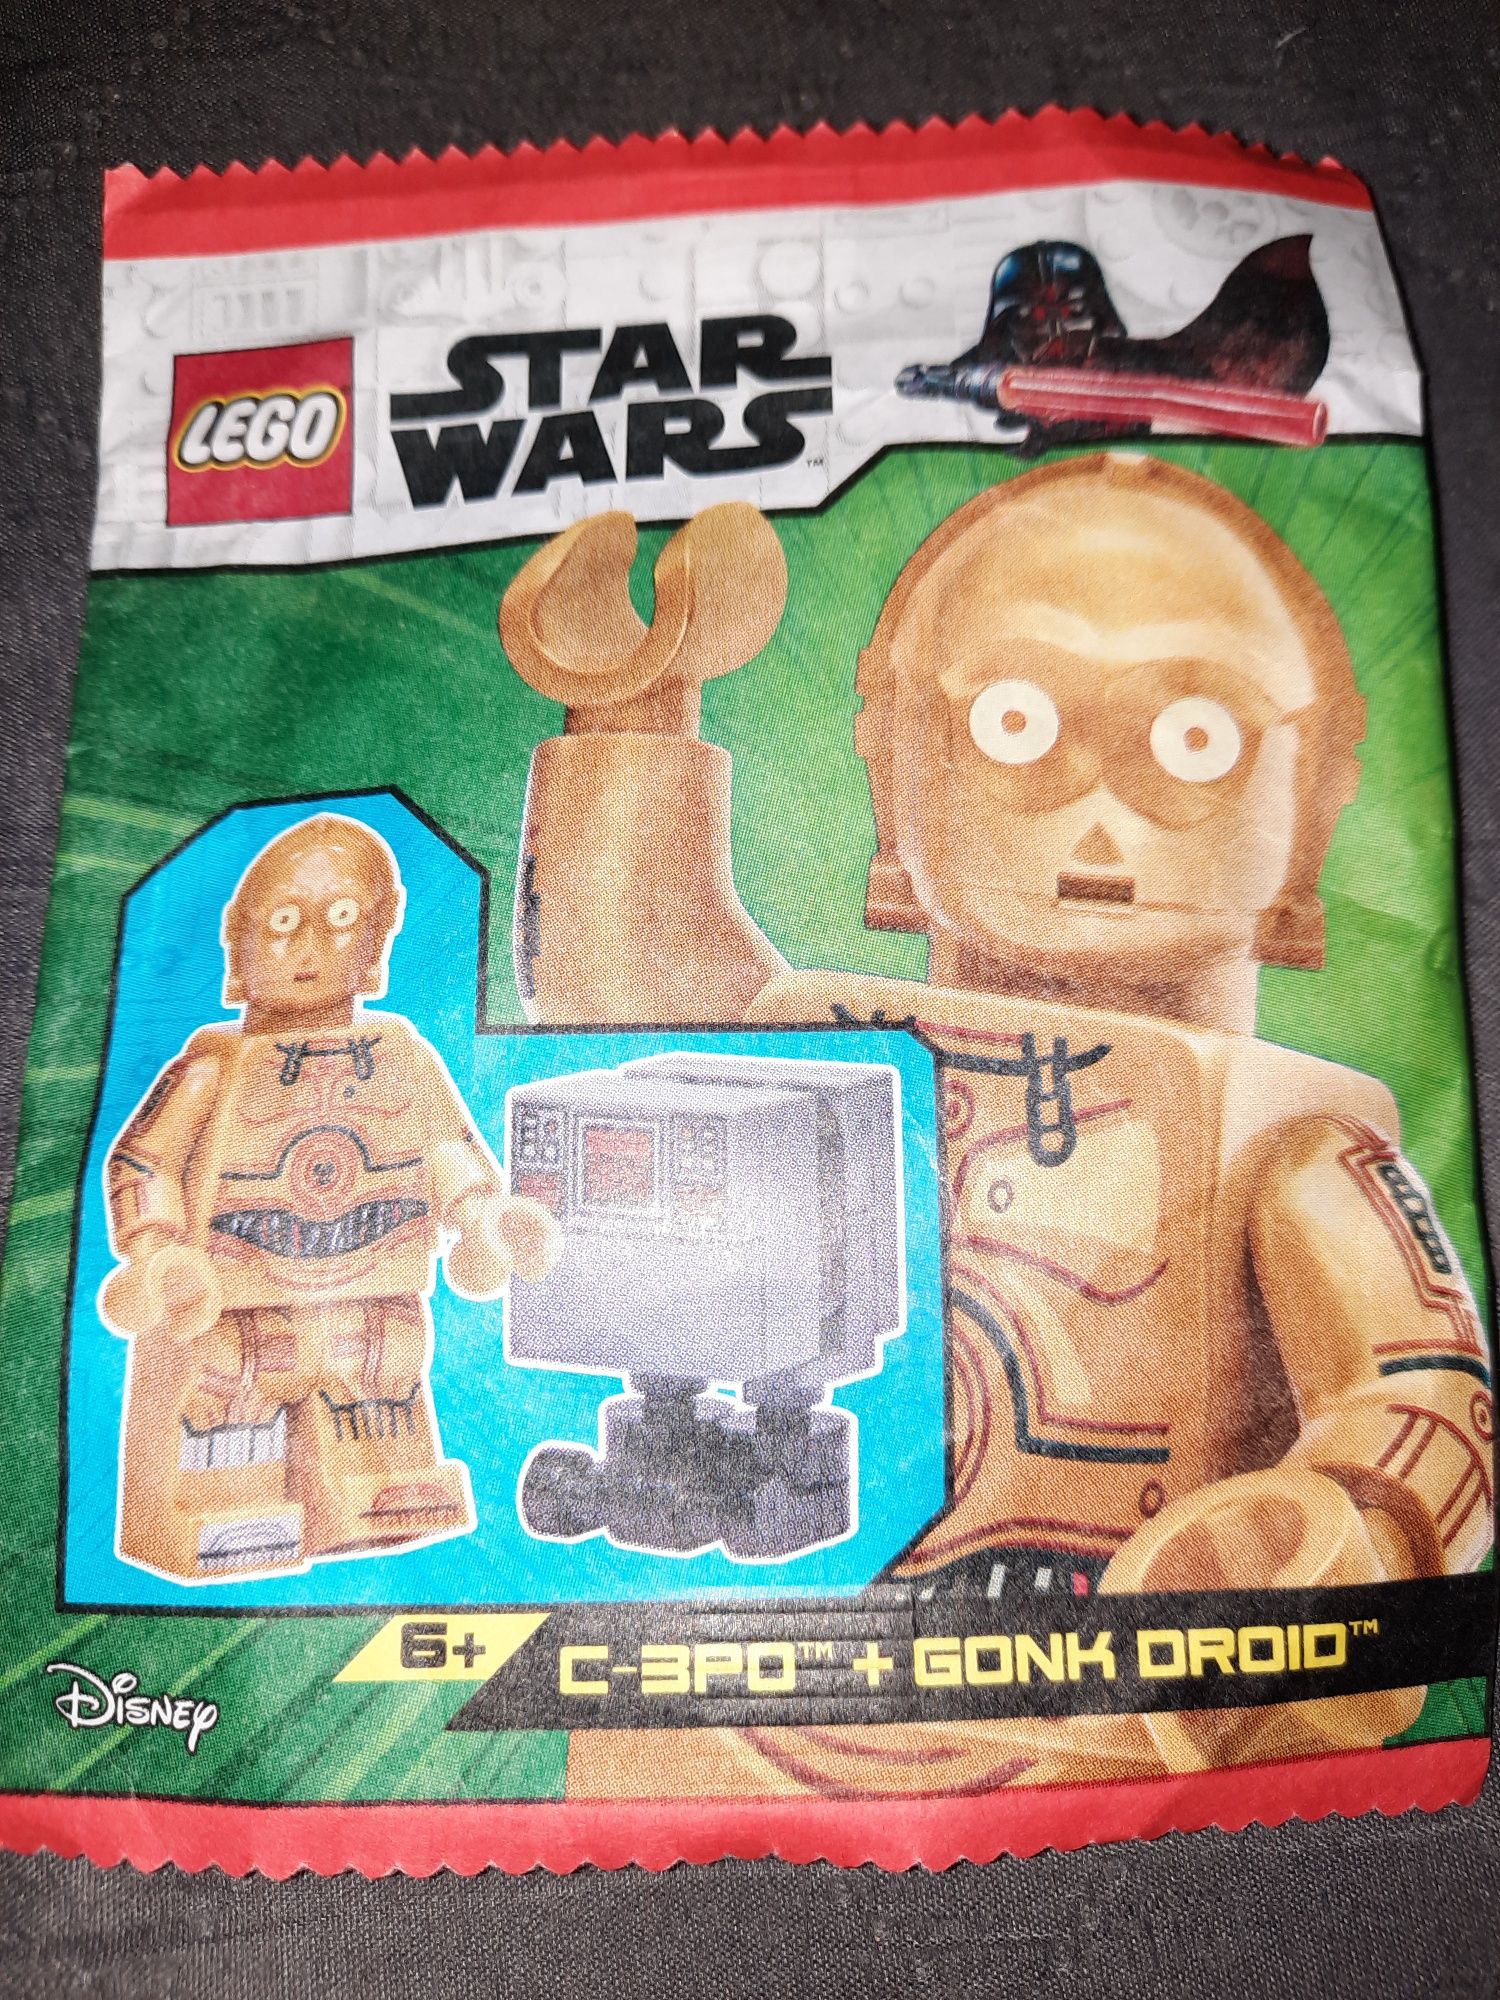 Lego Star Wars saszetka z figurką  C-3PO i Gonk Droid